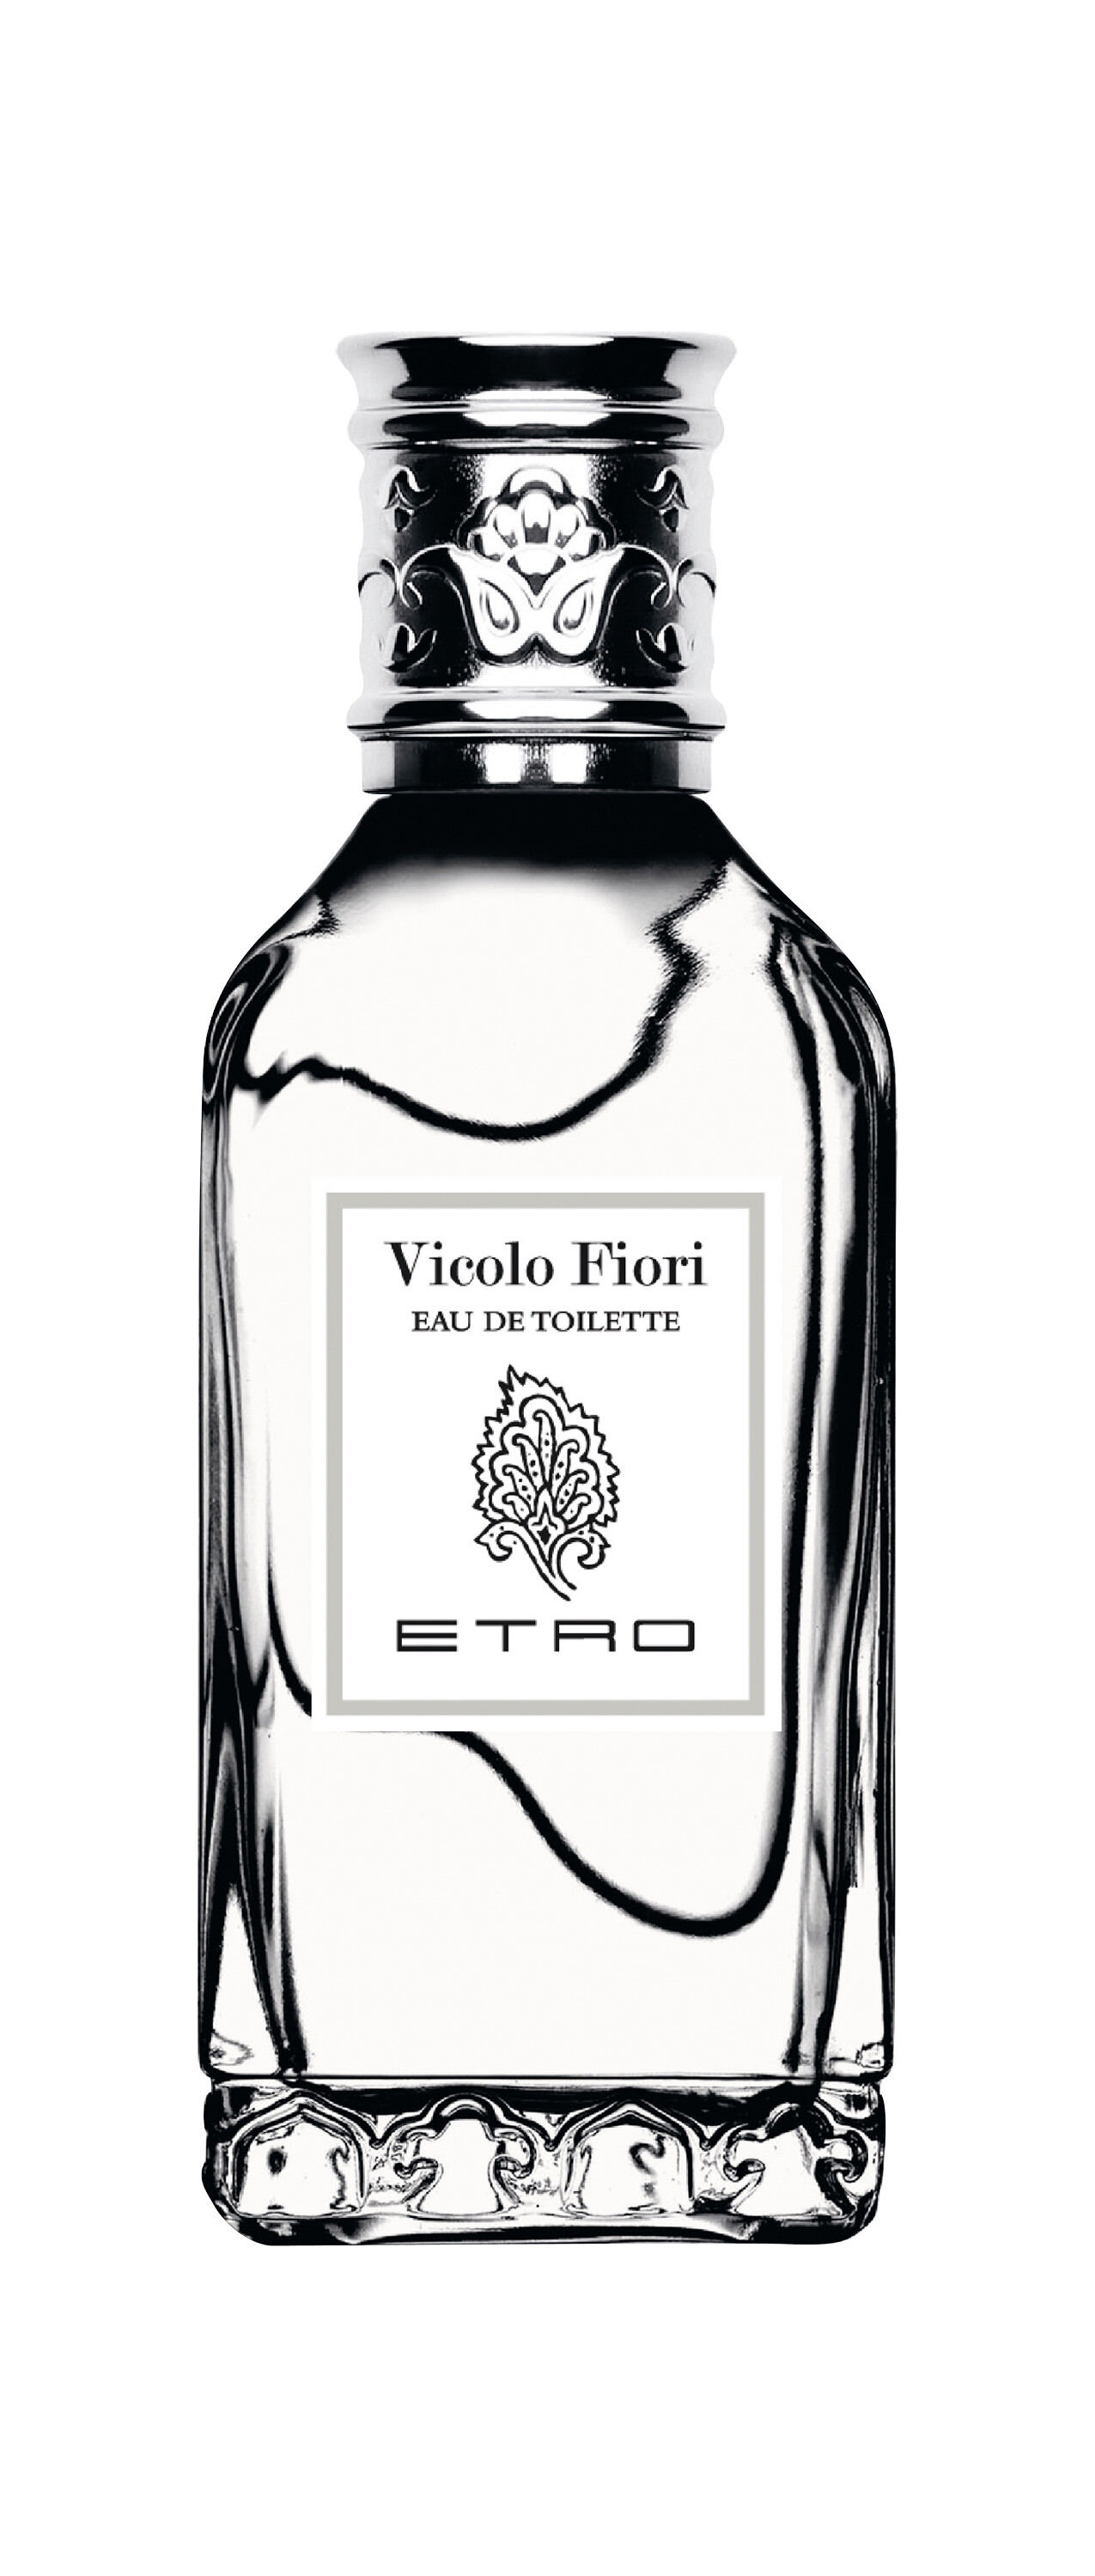 ETRO Vicolo Fiori EDT 50ml